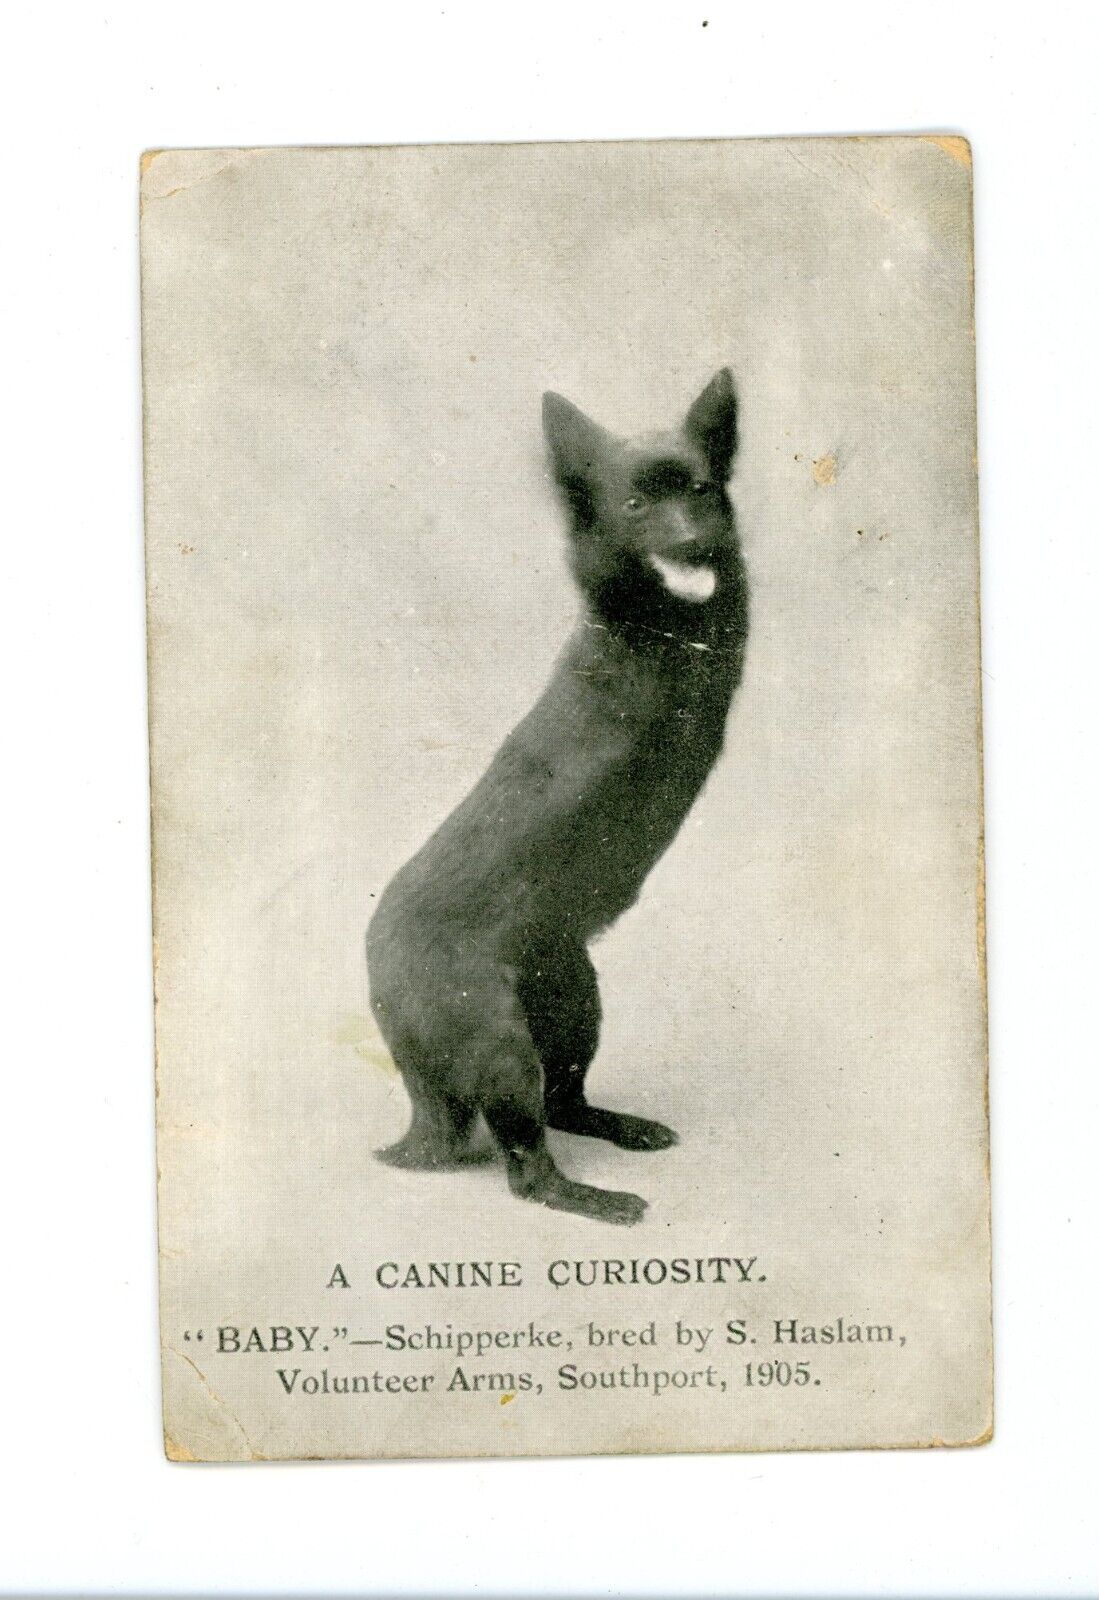 Deformed pet dog missing legs , birth defect vintage postcard oddity bizarre